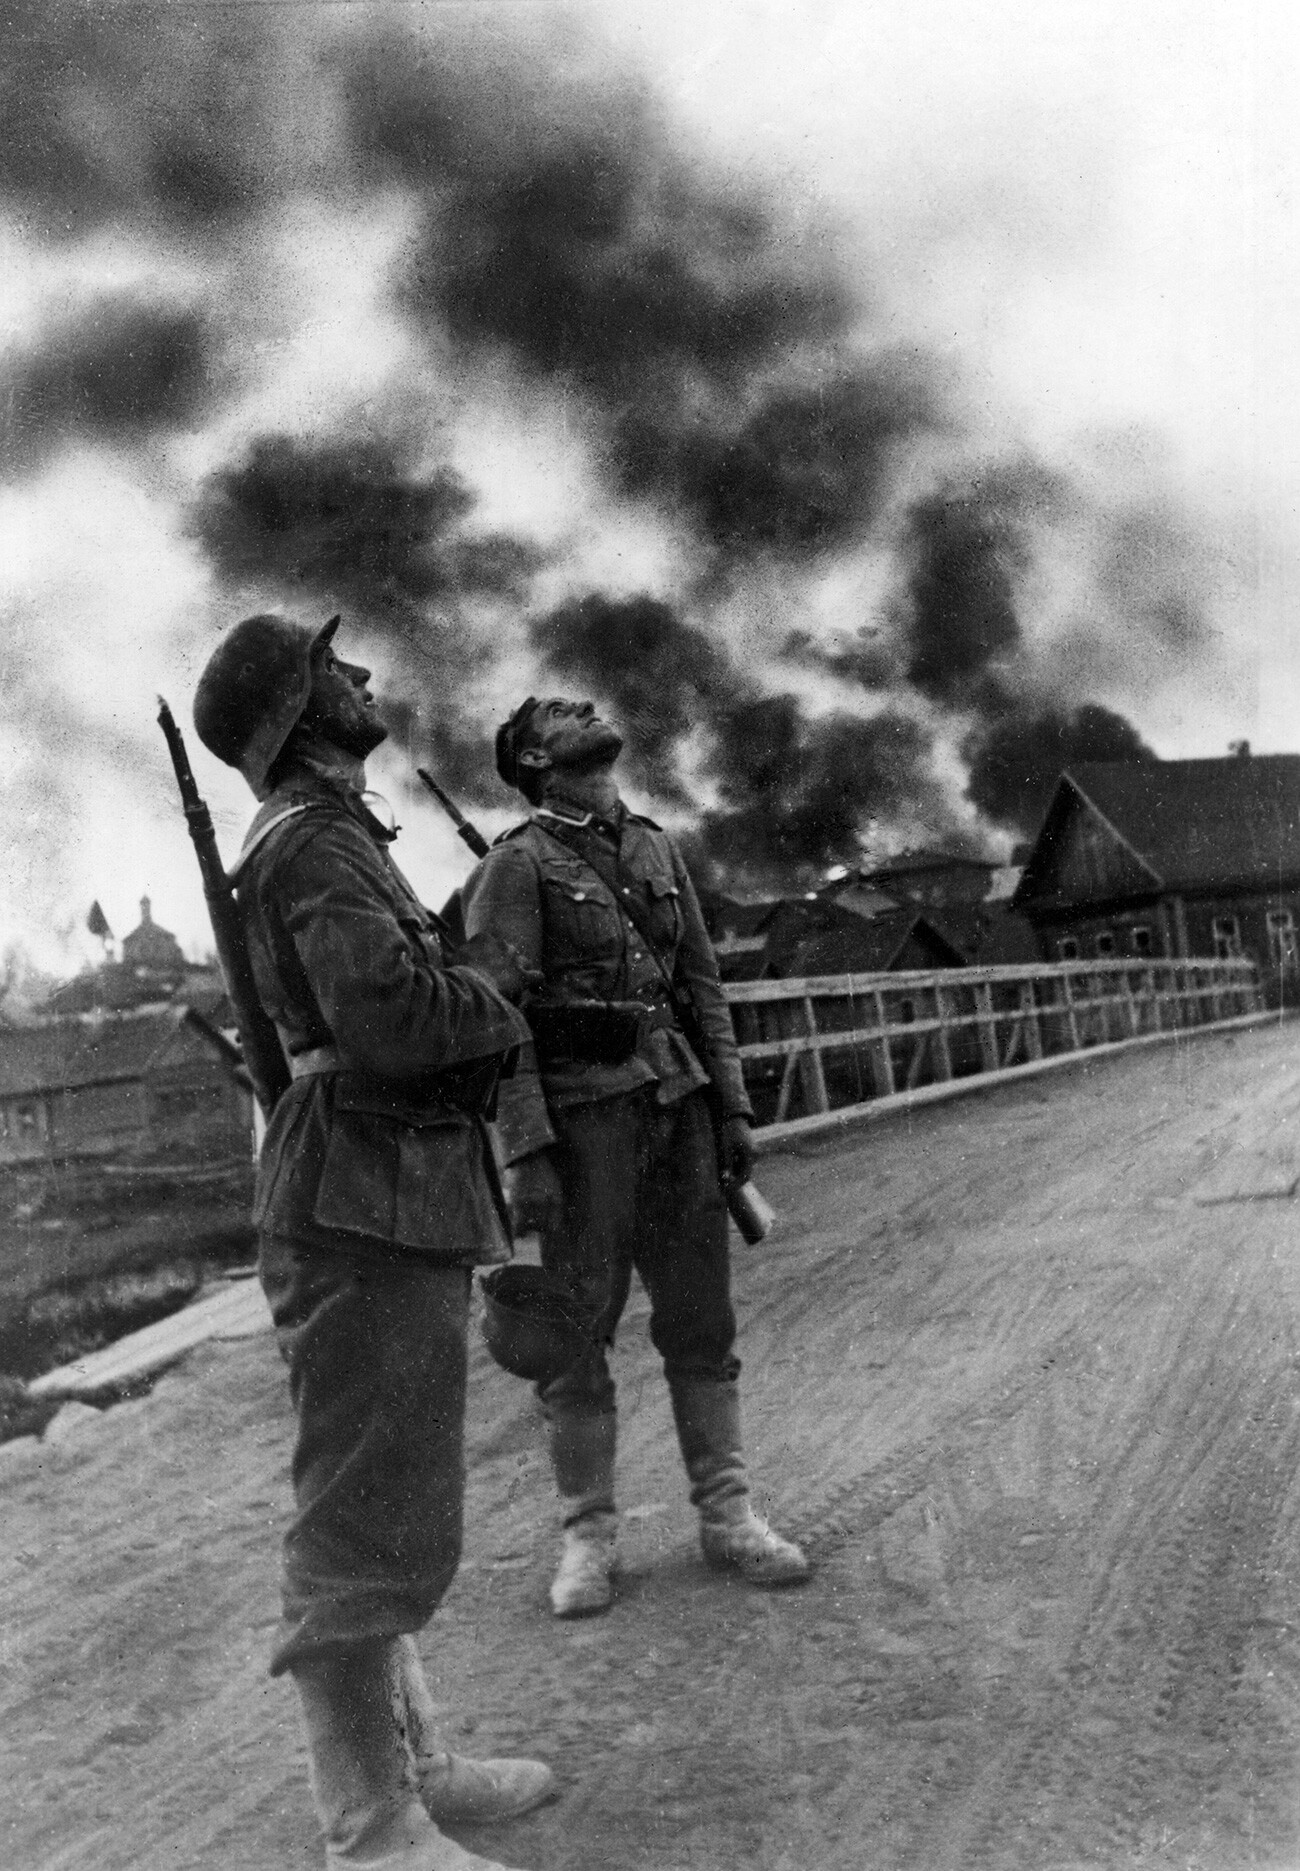 Na območju Vjazme: dva nemška pehotnika po zračnem spopadu med nasprotnimi bojnimi letali. V ozadju nekaj hiš v plamenih. Vjazma, oktober 1941